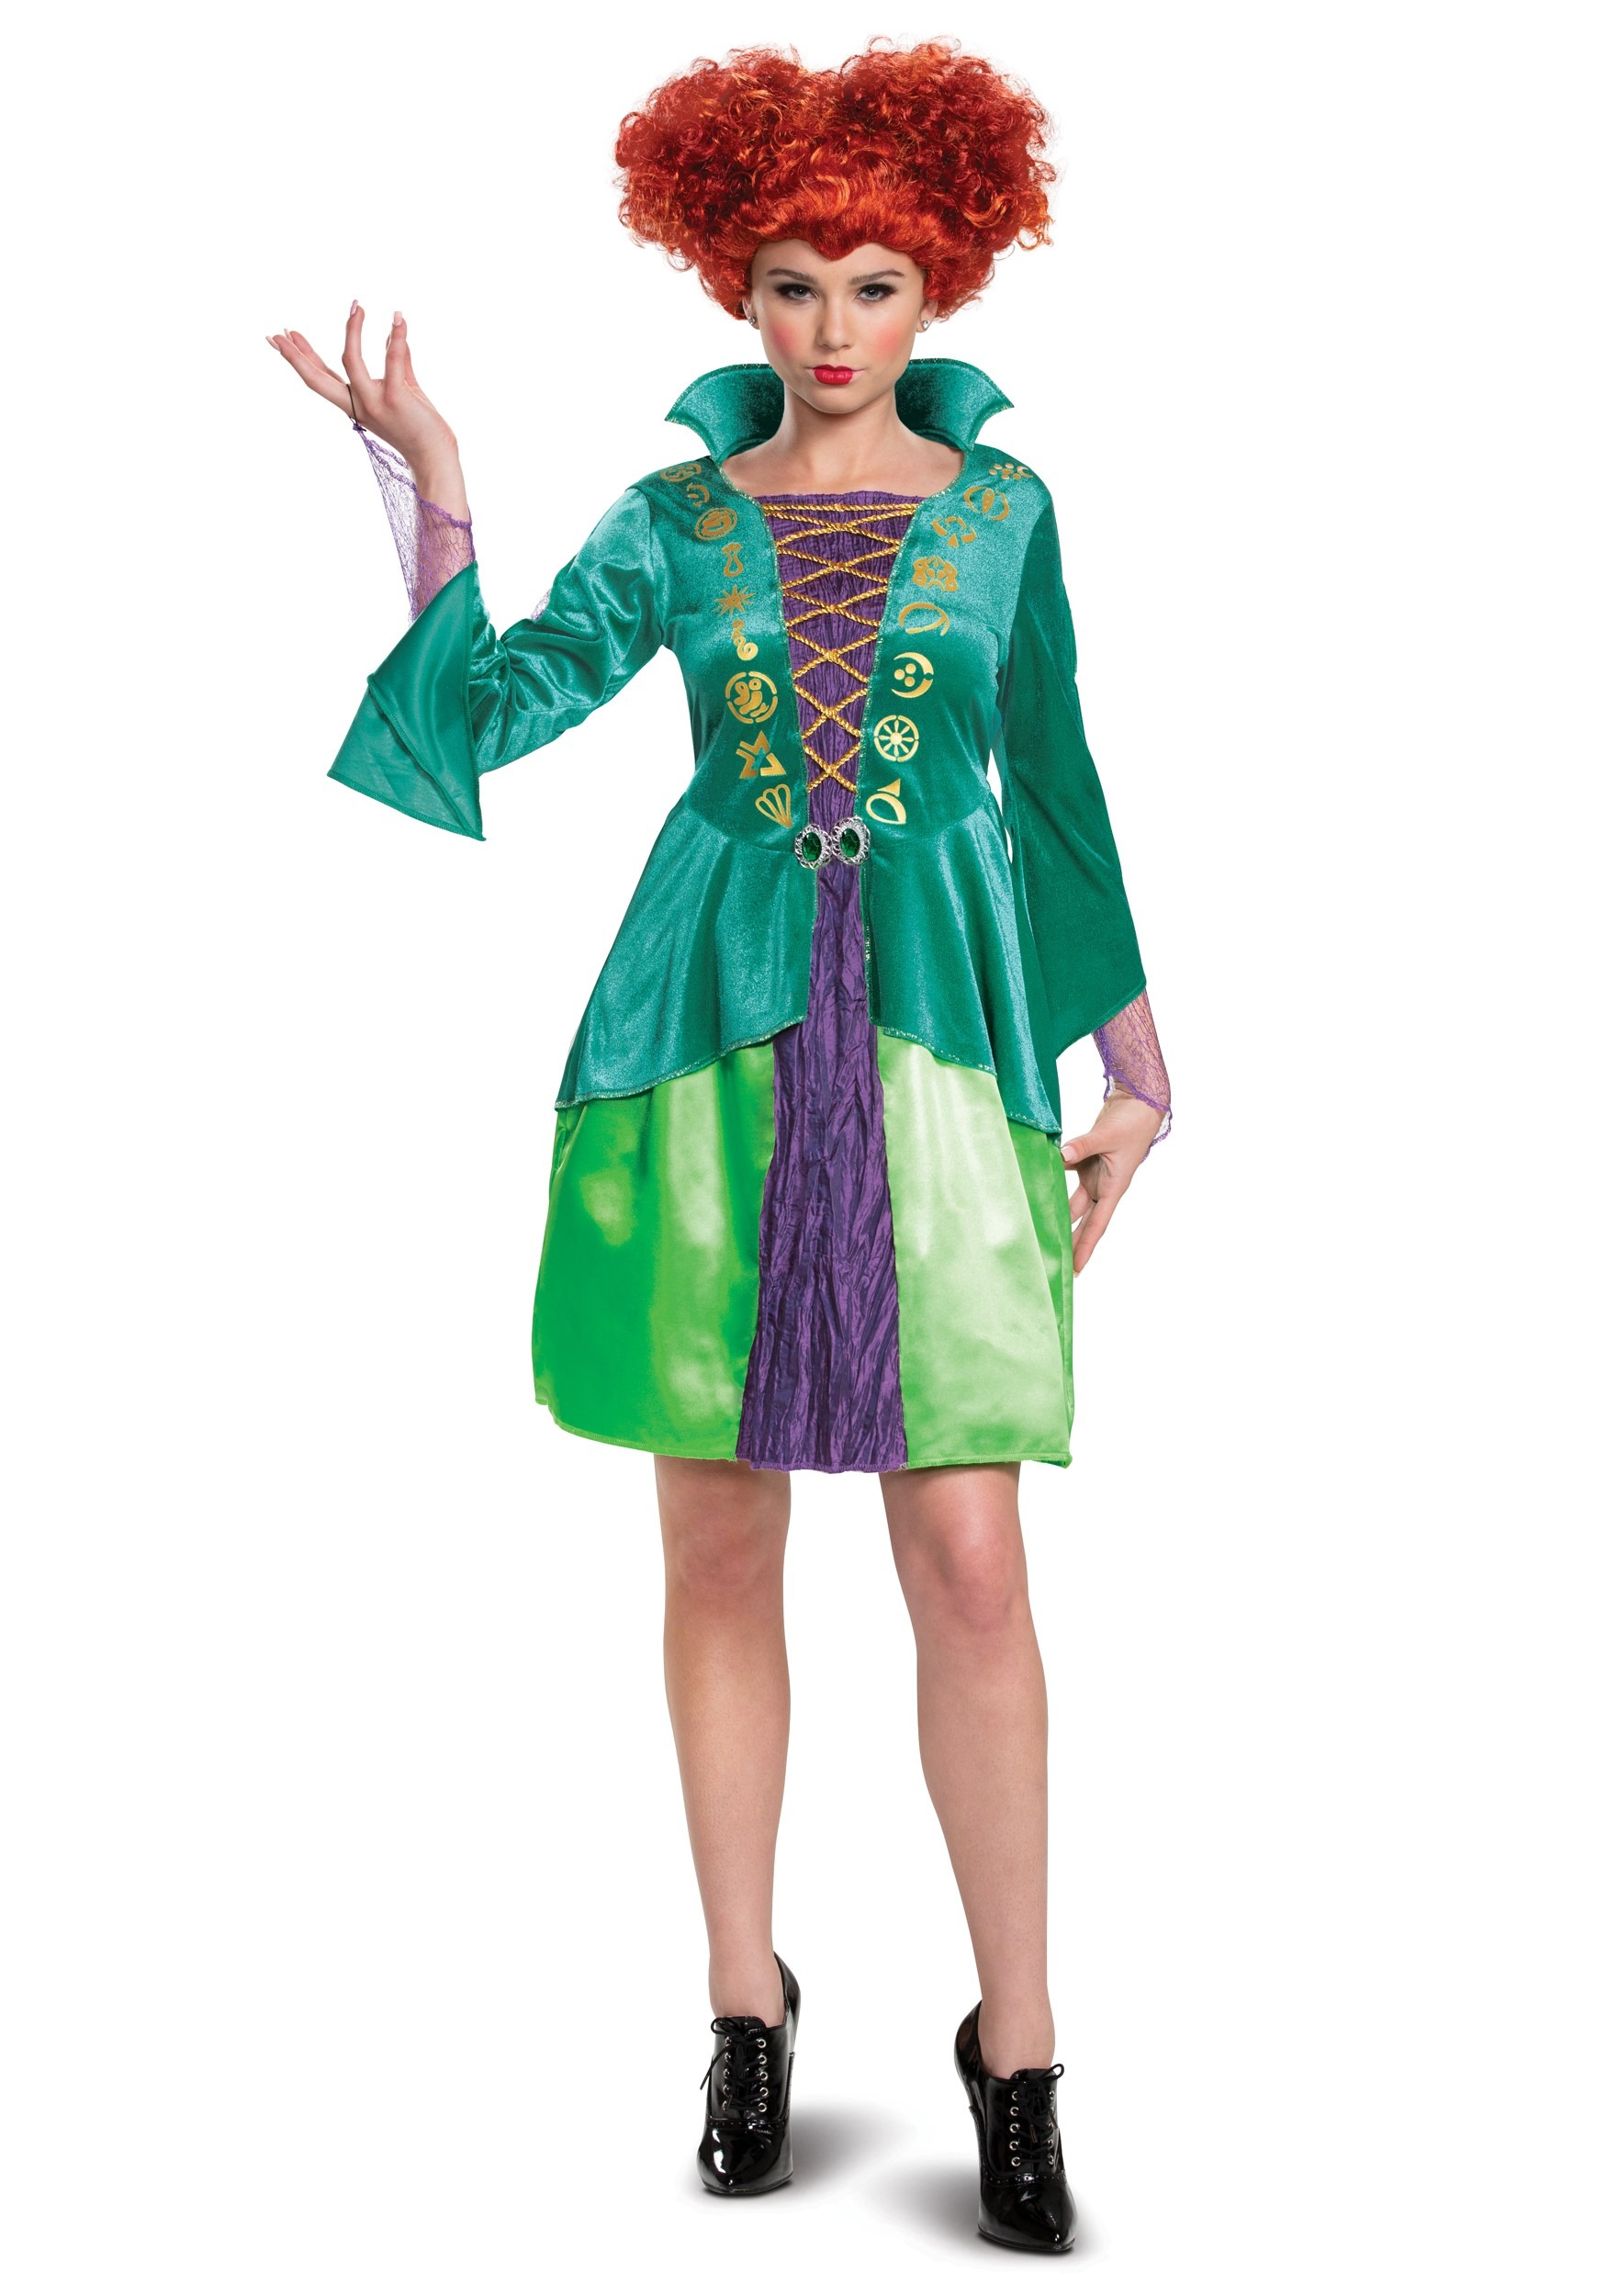 Image of Adult Disney Hocus Pocus Classic Wini Costume Dress | Disney Costumes ID DI15191-L